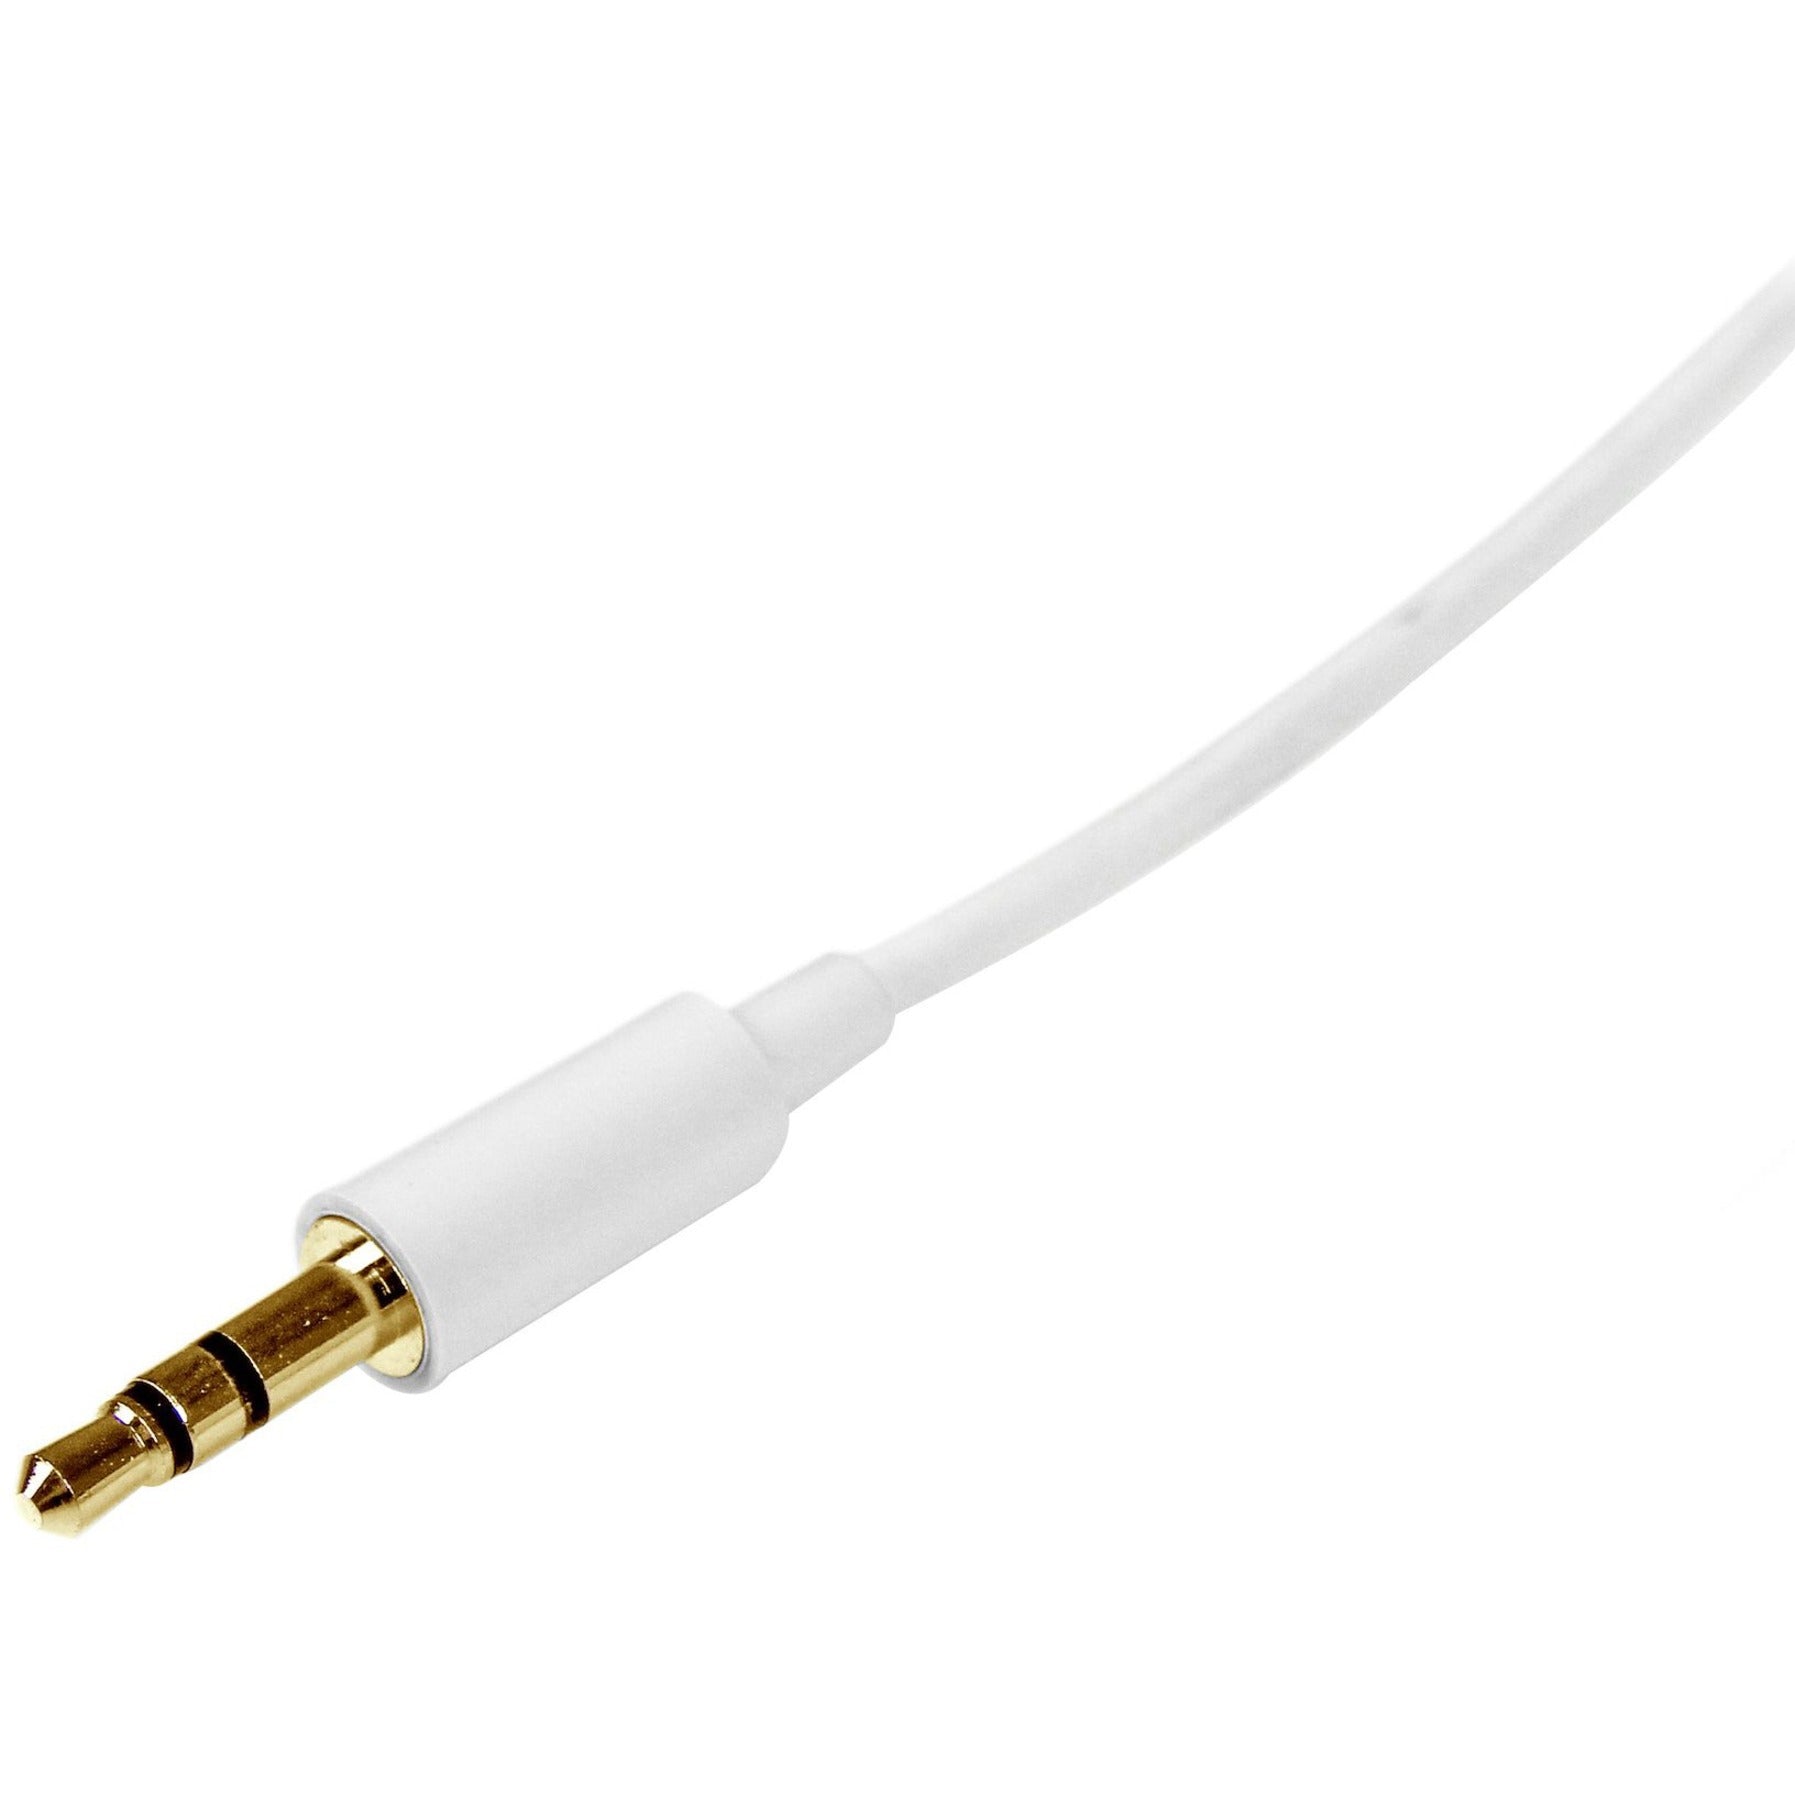 Marca StarTech.com Cable de audio estéreo delgado blanco de 3 m MU3MMMSWH - Macho a macho moldeado conductor de cobre Longitud de 9.84 pies